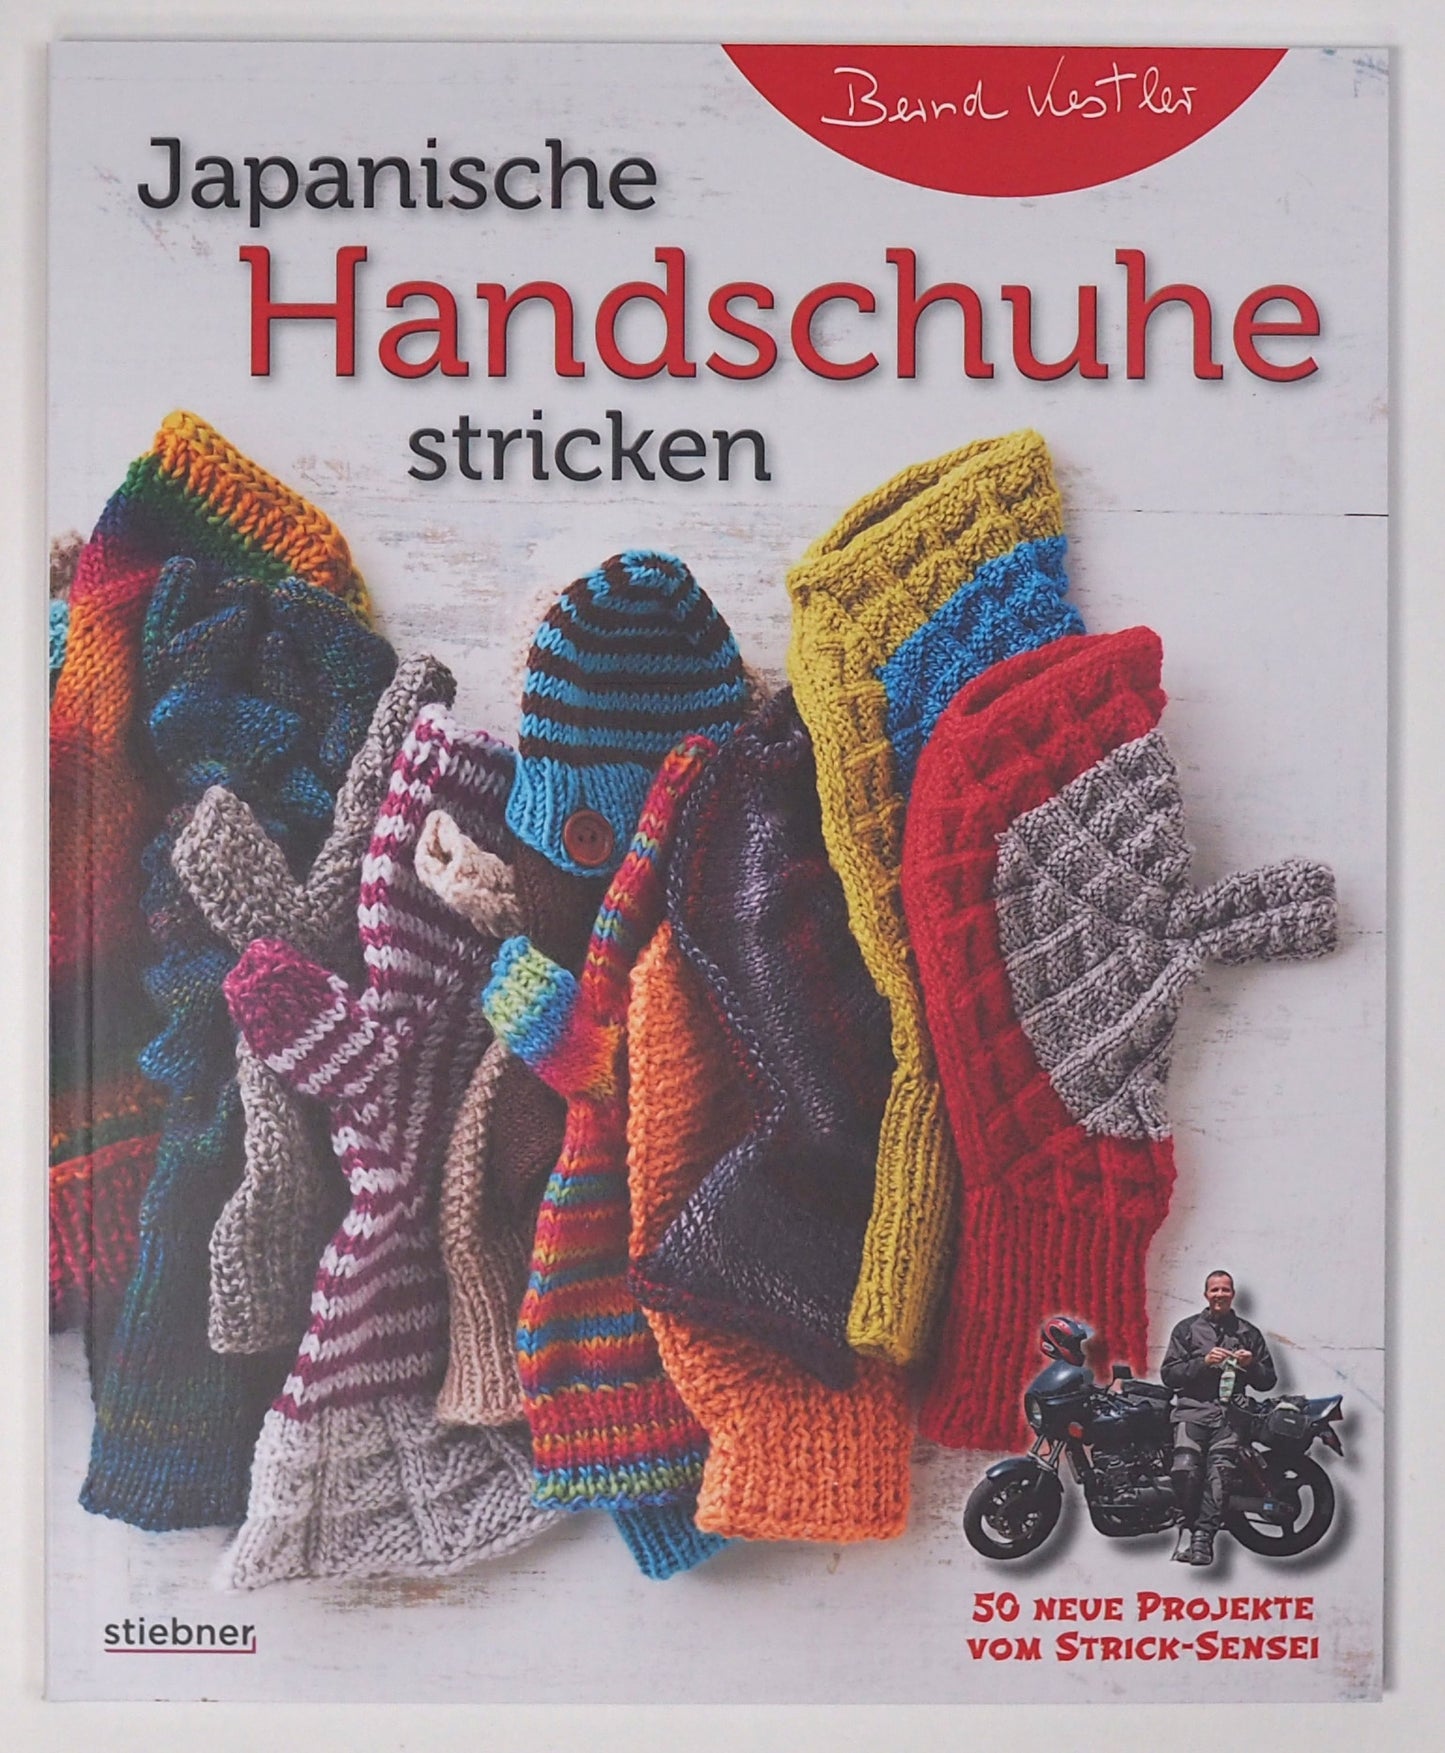 Japanische Handschuhe stricken by Bernd Kestler - German Edition -